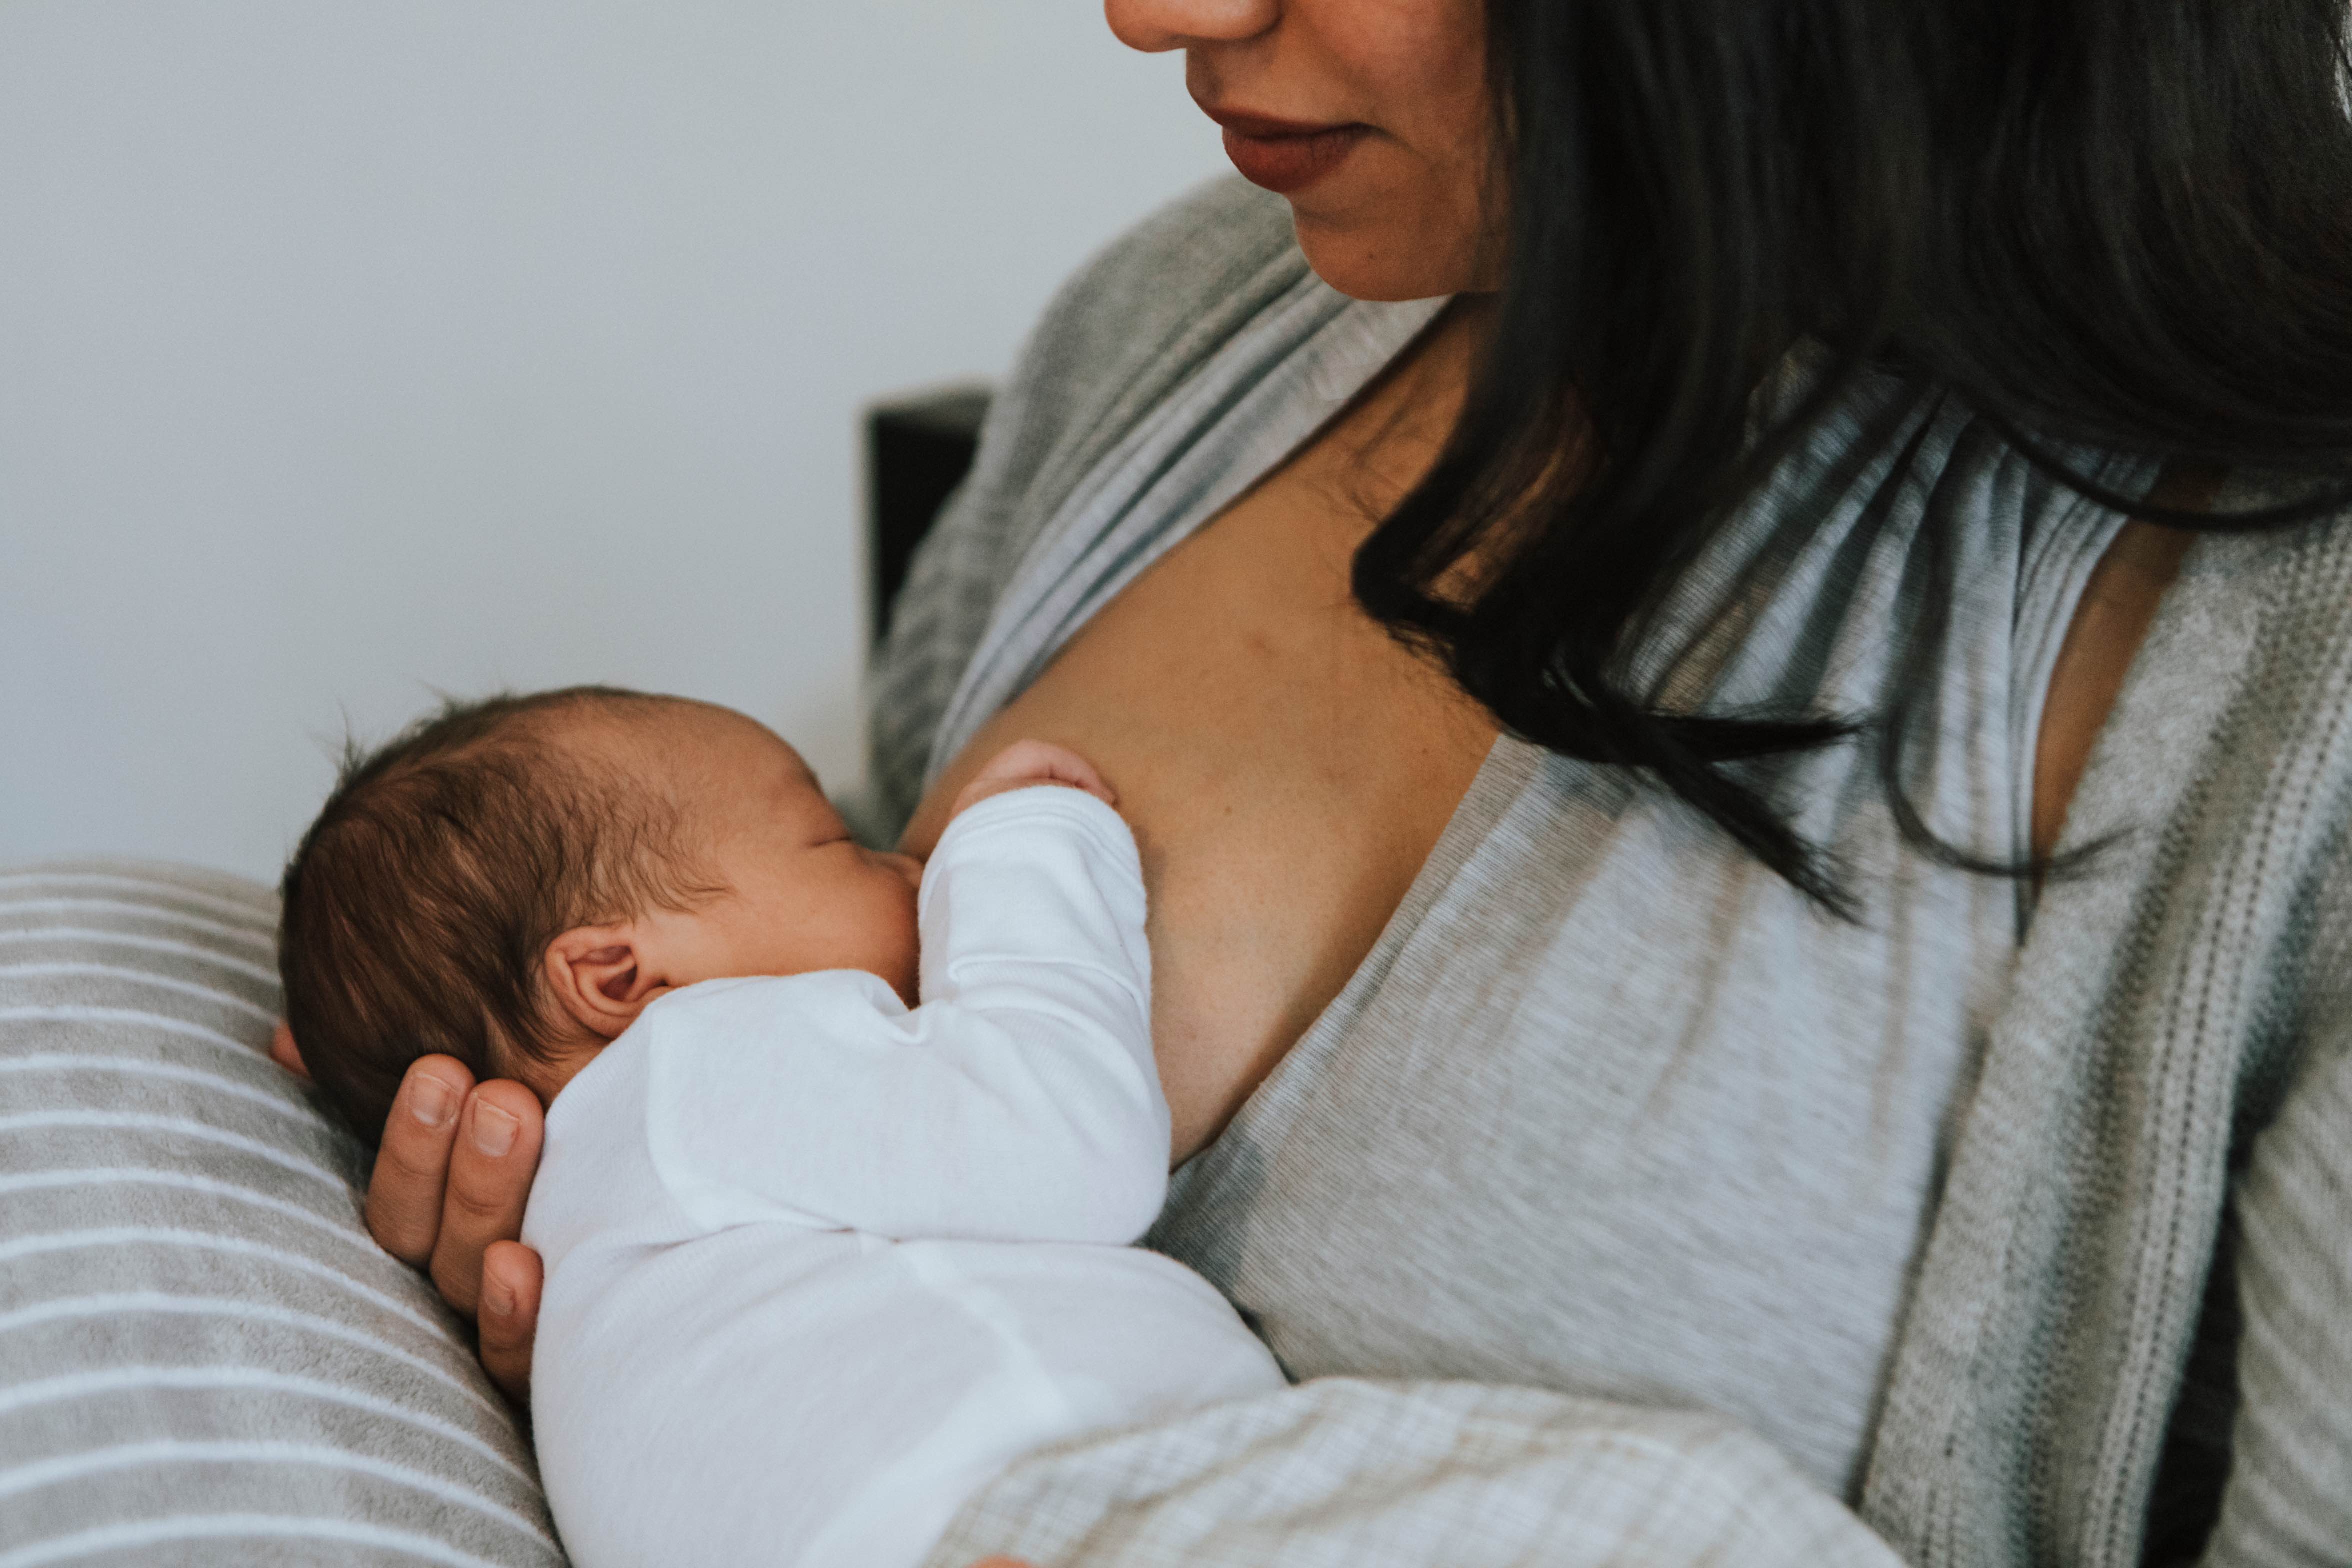 Top 10 Newborn Breastfeeding Essentials You'll Want as a New Mom